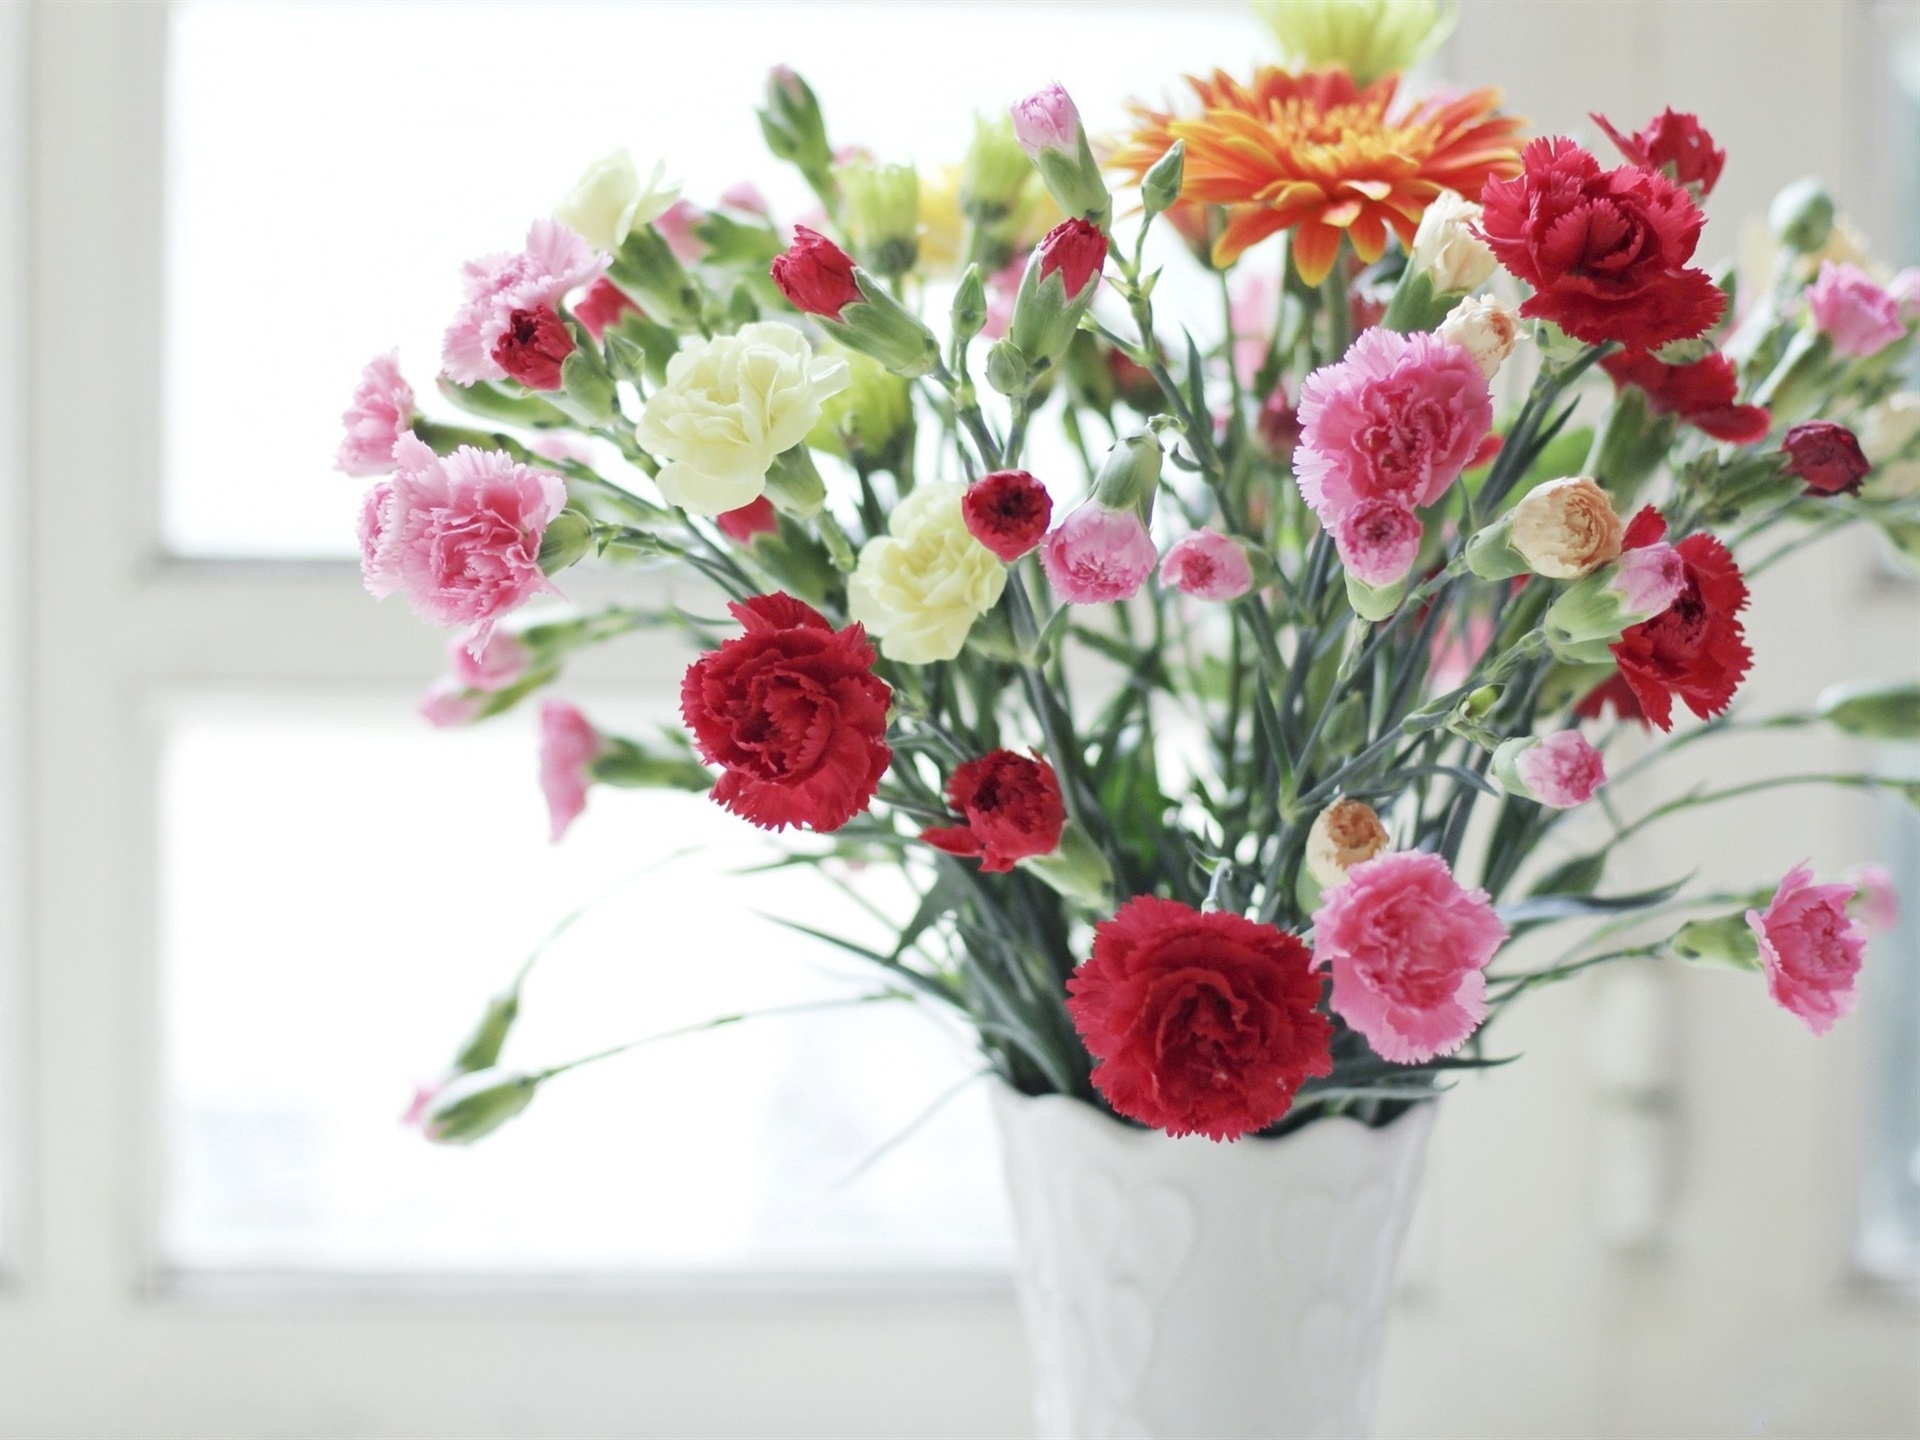 康乃馨,粉红色和白色的花朵,花瓶壁纸高清原图查看